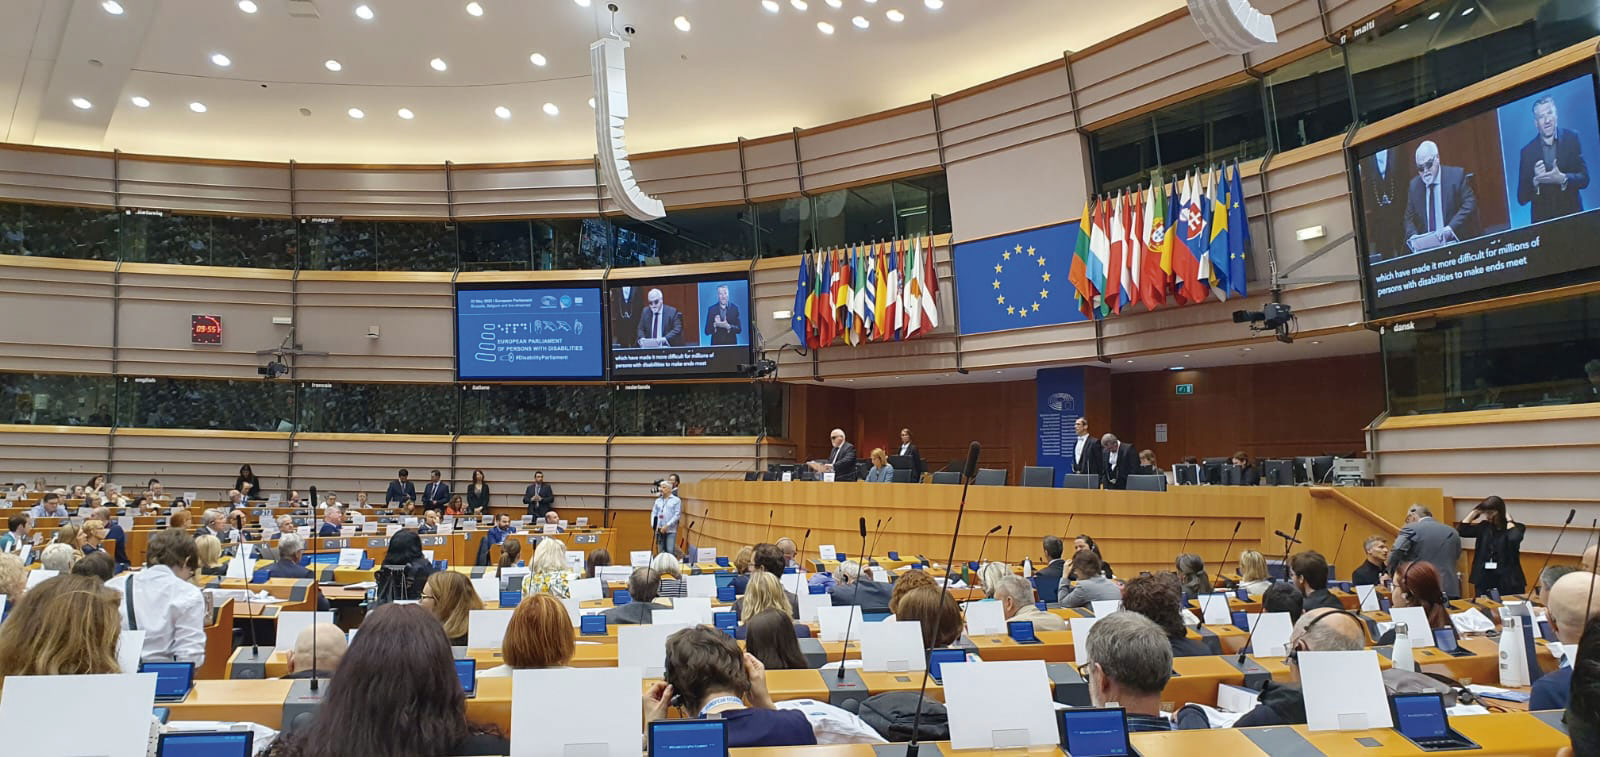 V Parlamento europeo de personas con discapacidad. Una Europa de todos y para todos